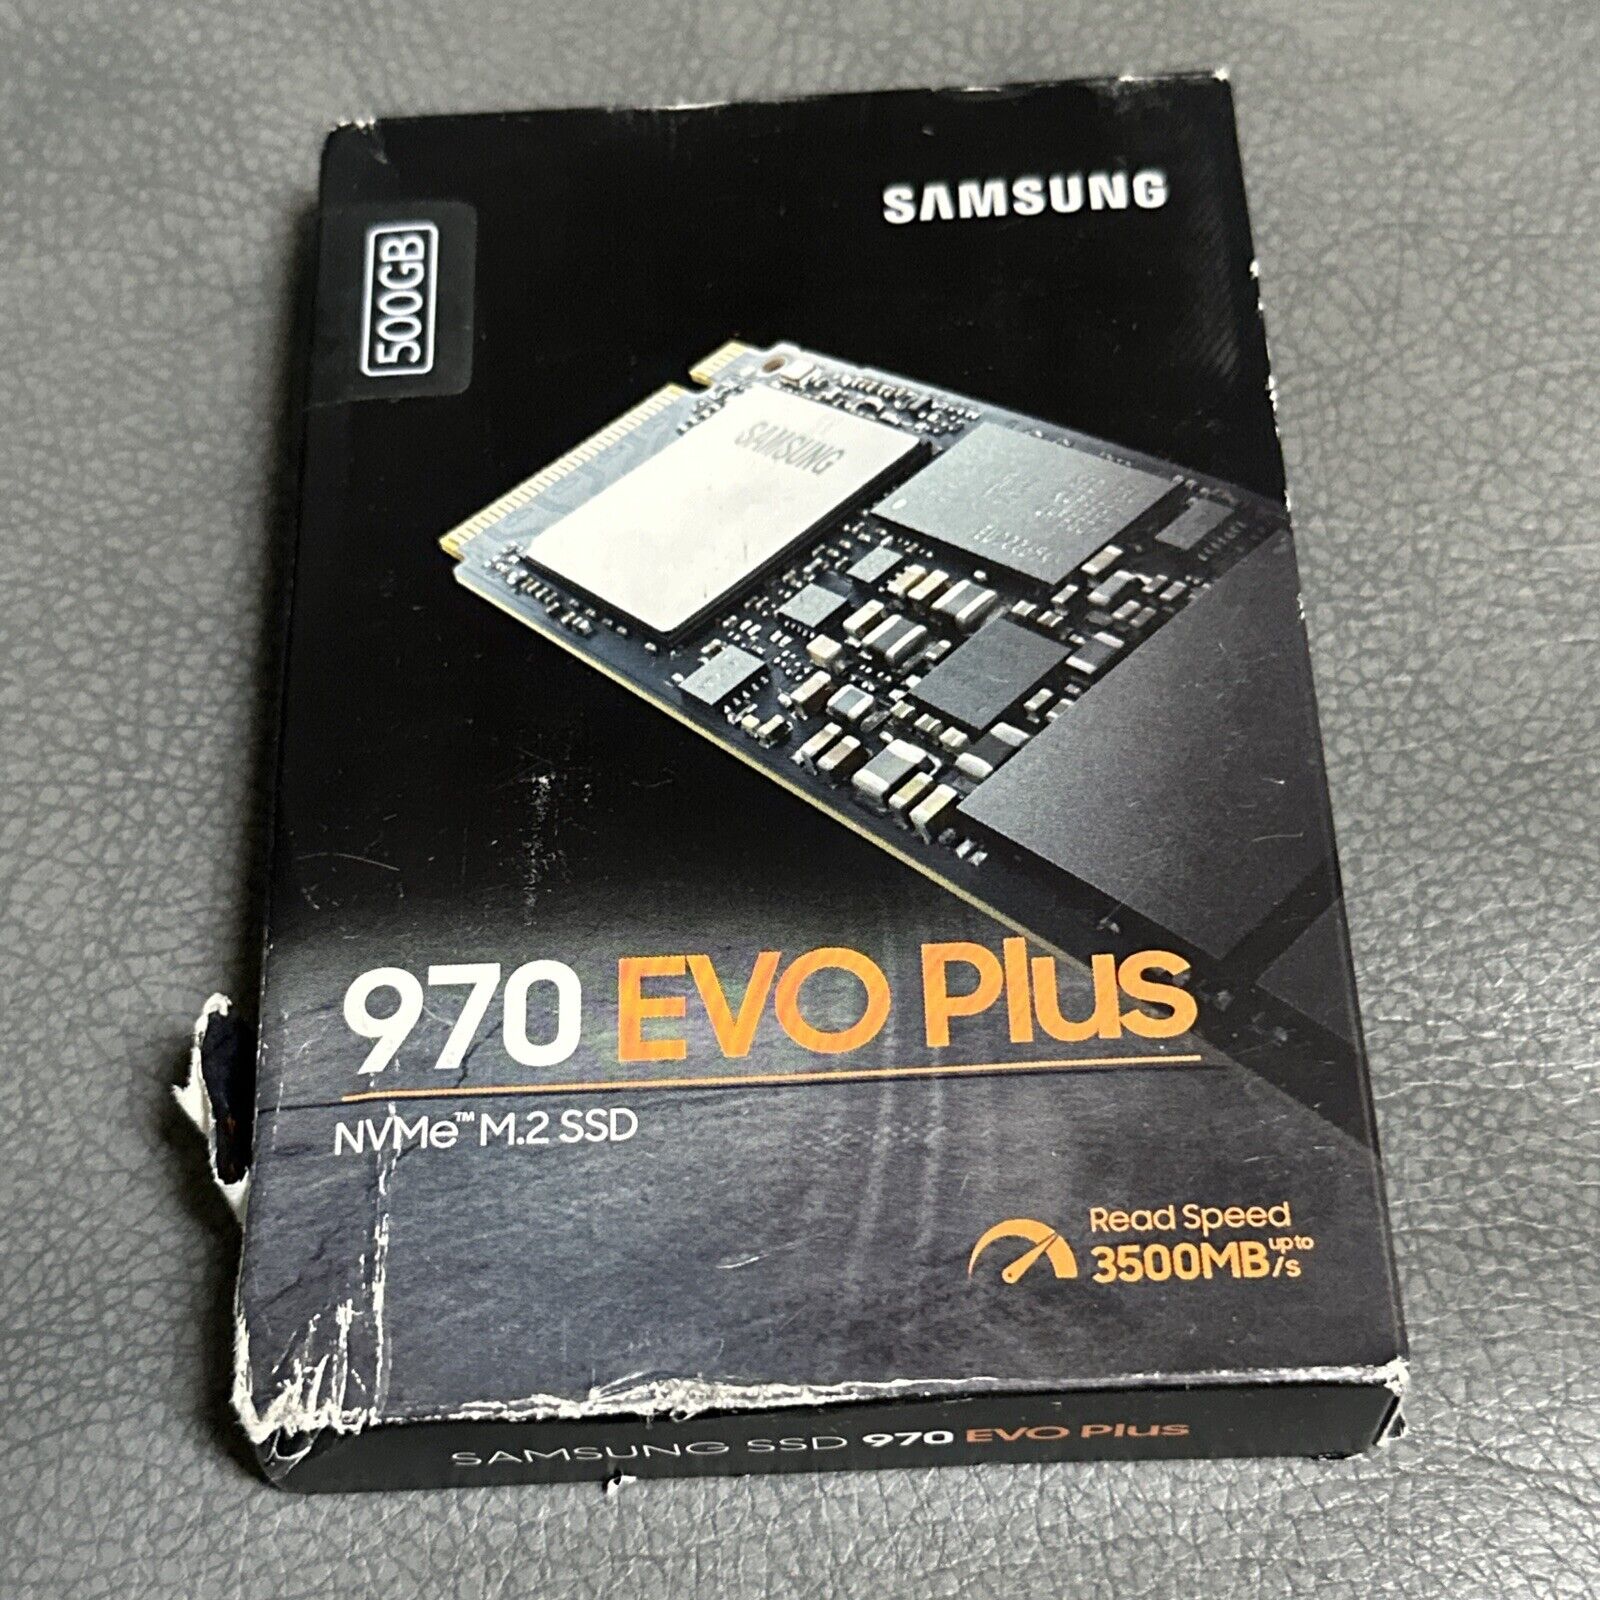 Samsung 970 EVO Plus NVMe M.2 500 GB Internal SSD (MZ-V7S500B/AM)